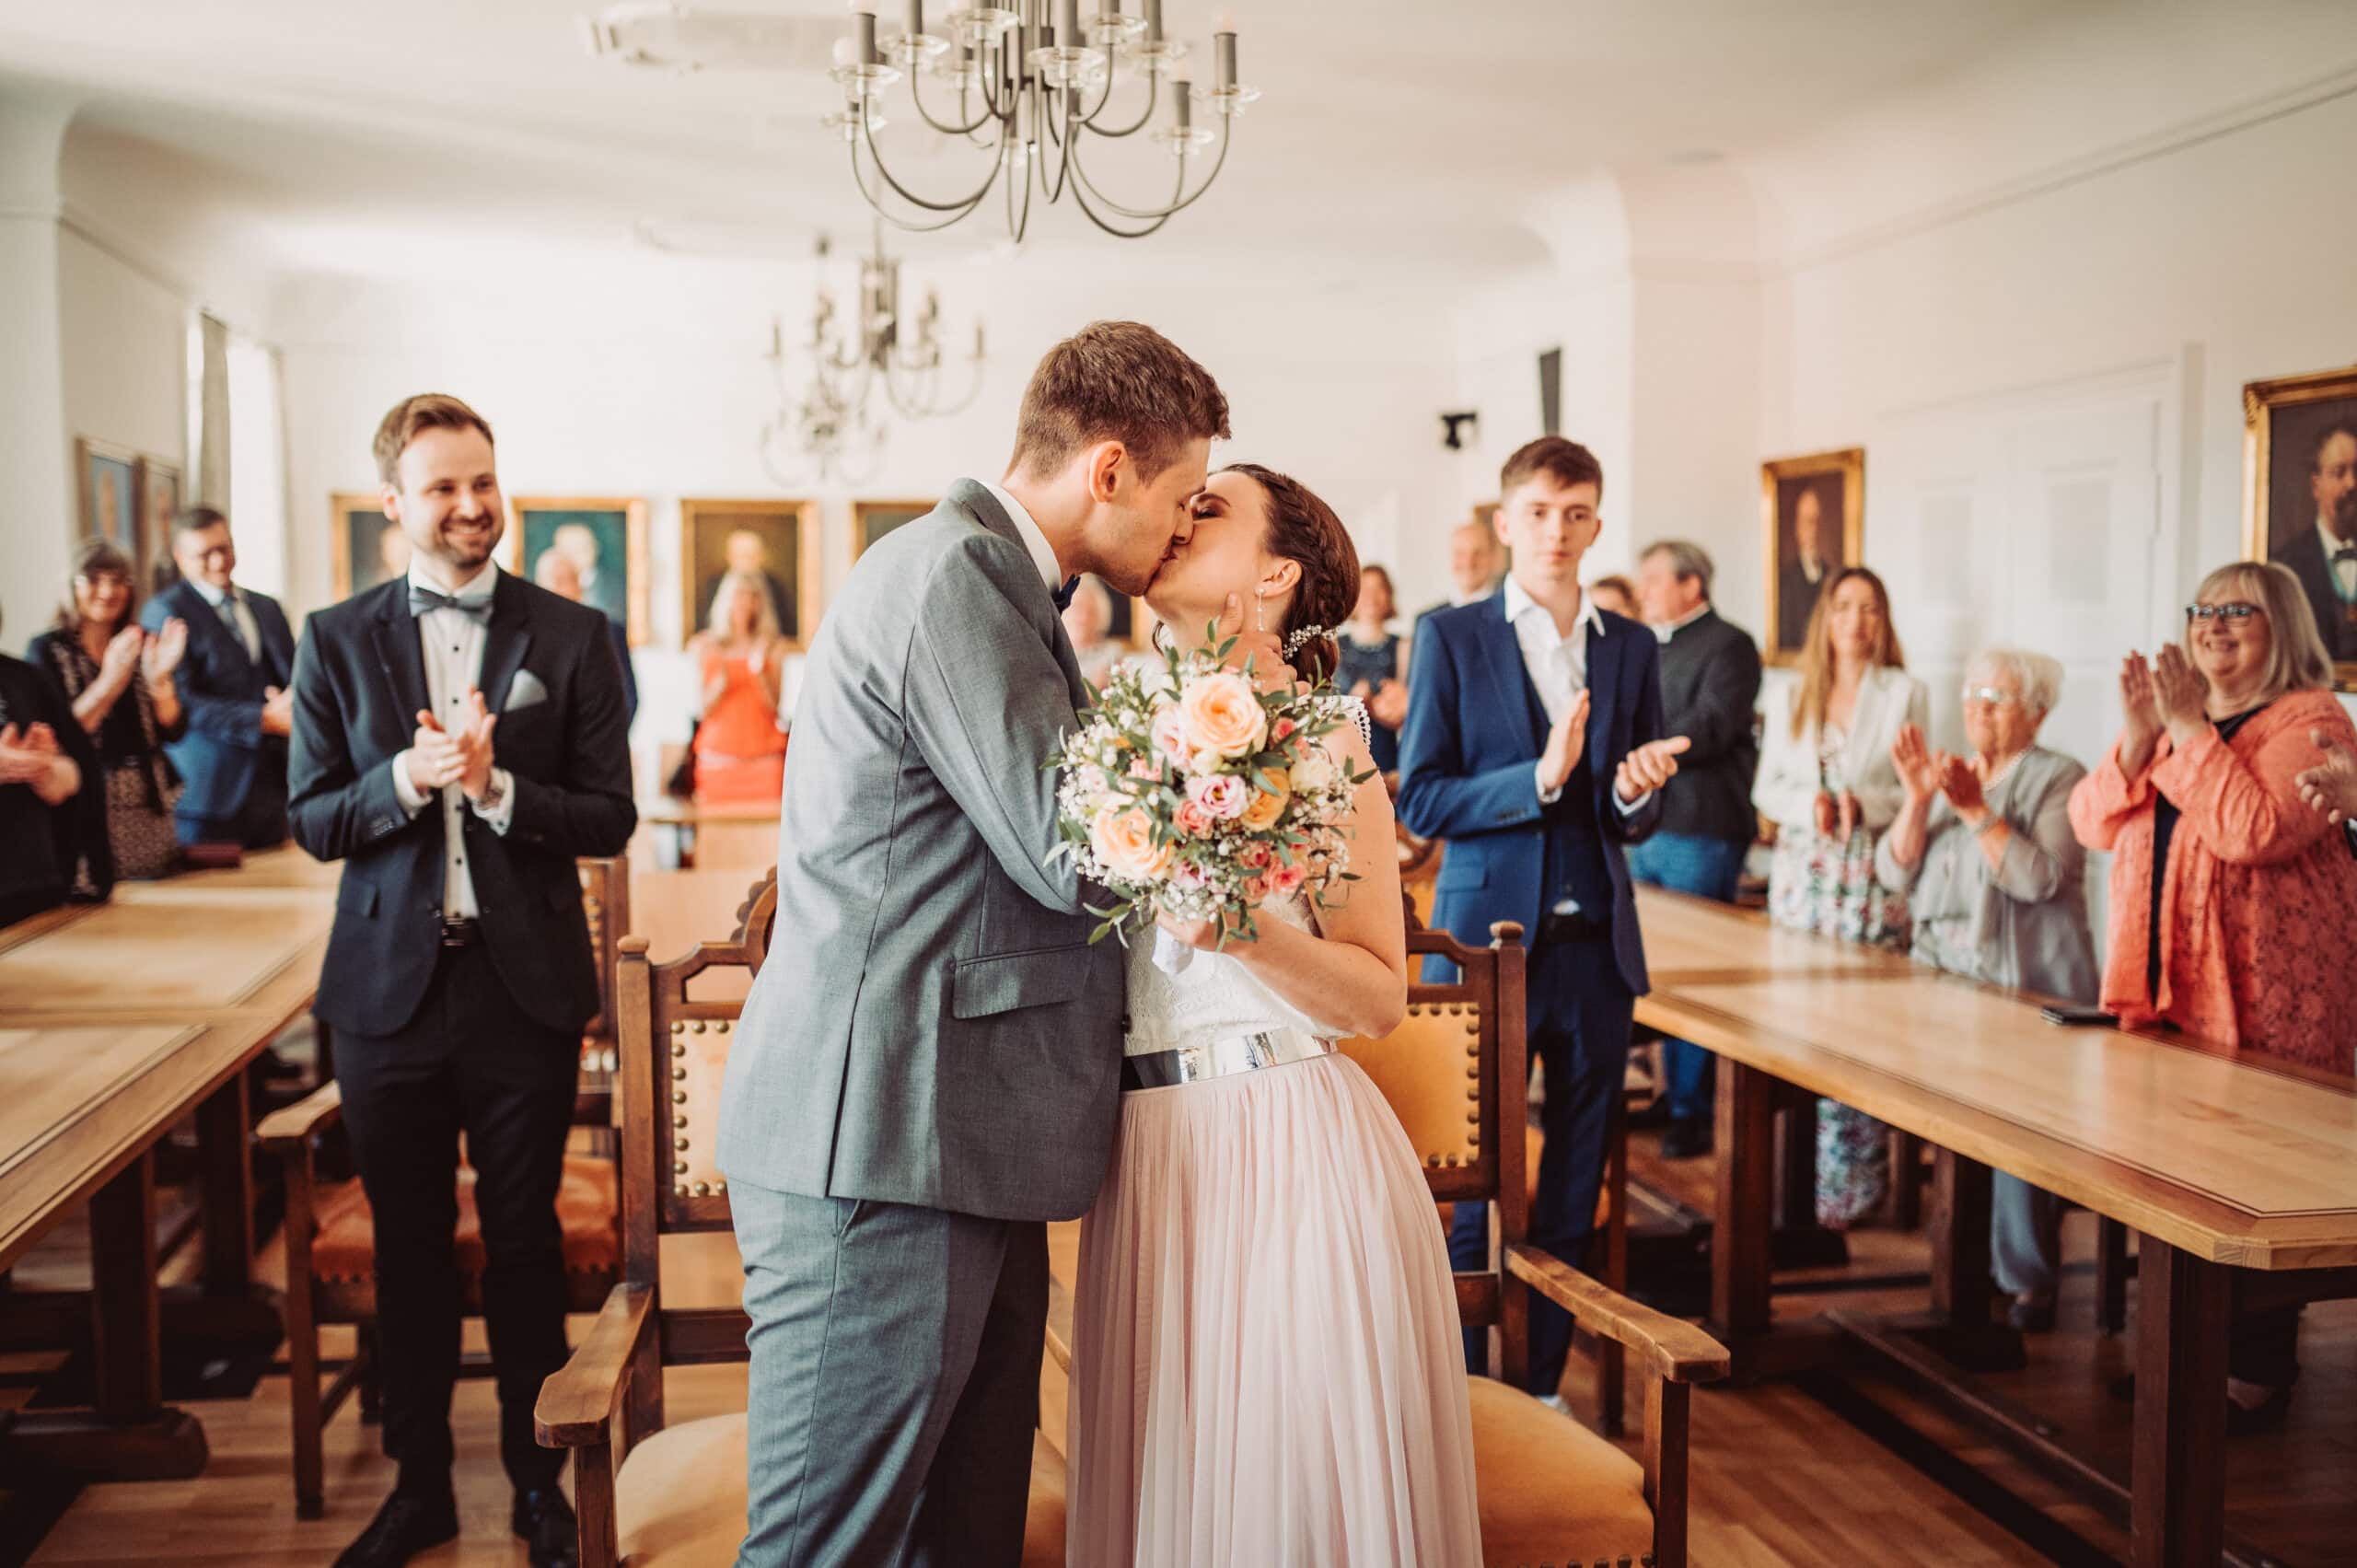 Das Standesamt in Oberbayern am Schliersee. Das Brautpaar küsst sich bei der Trauung und die Gäste klatschen.